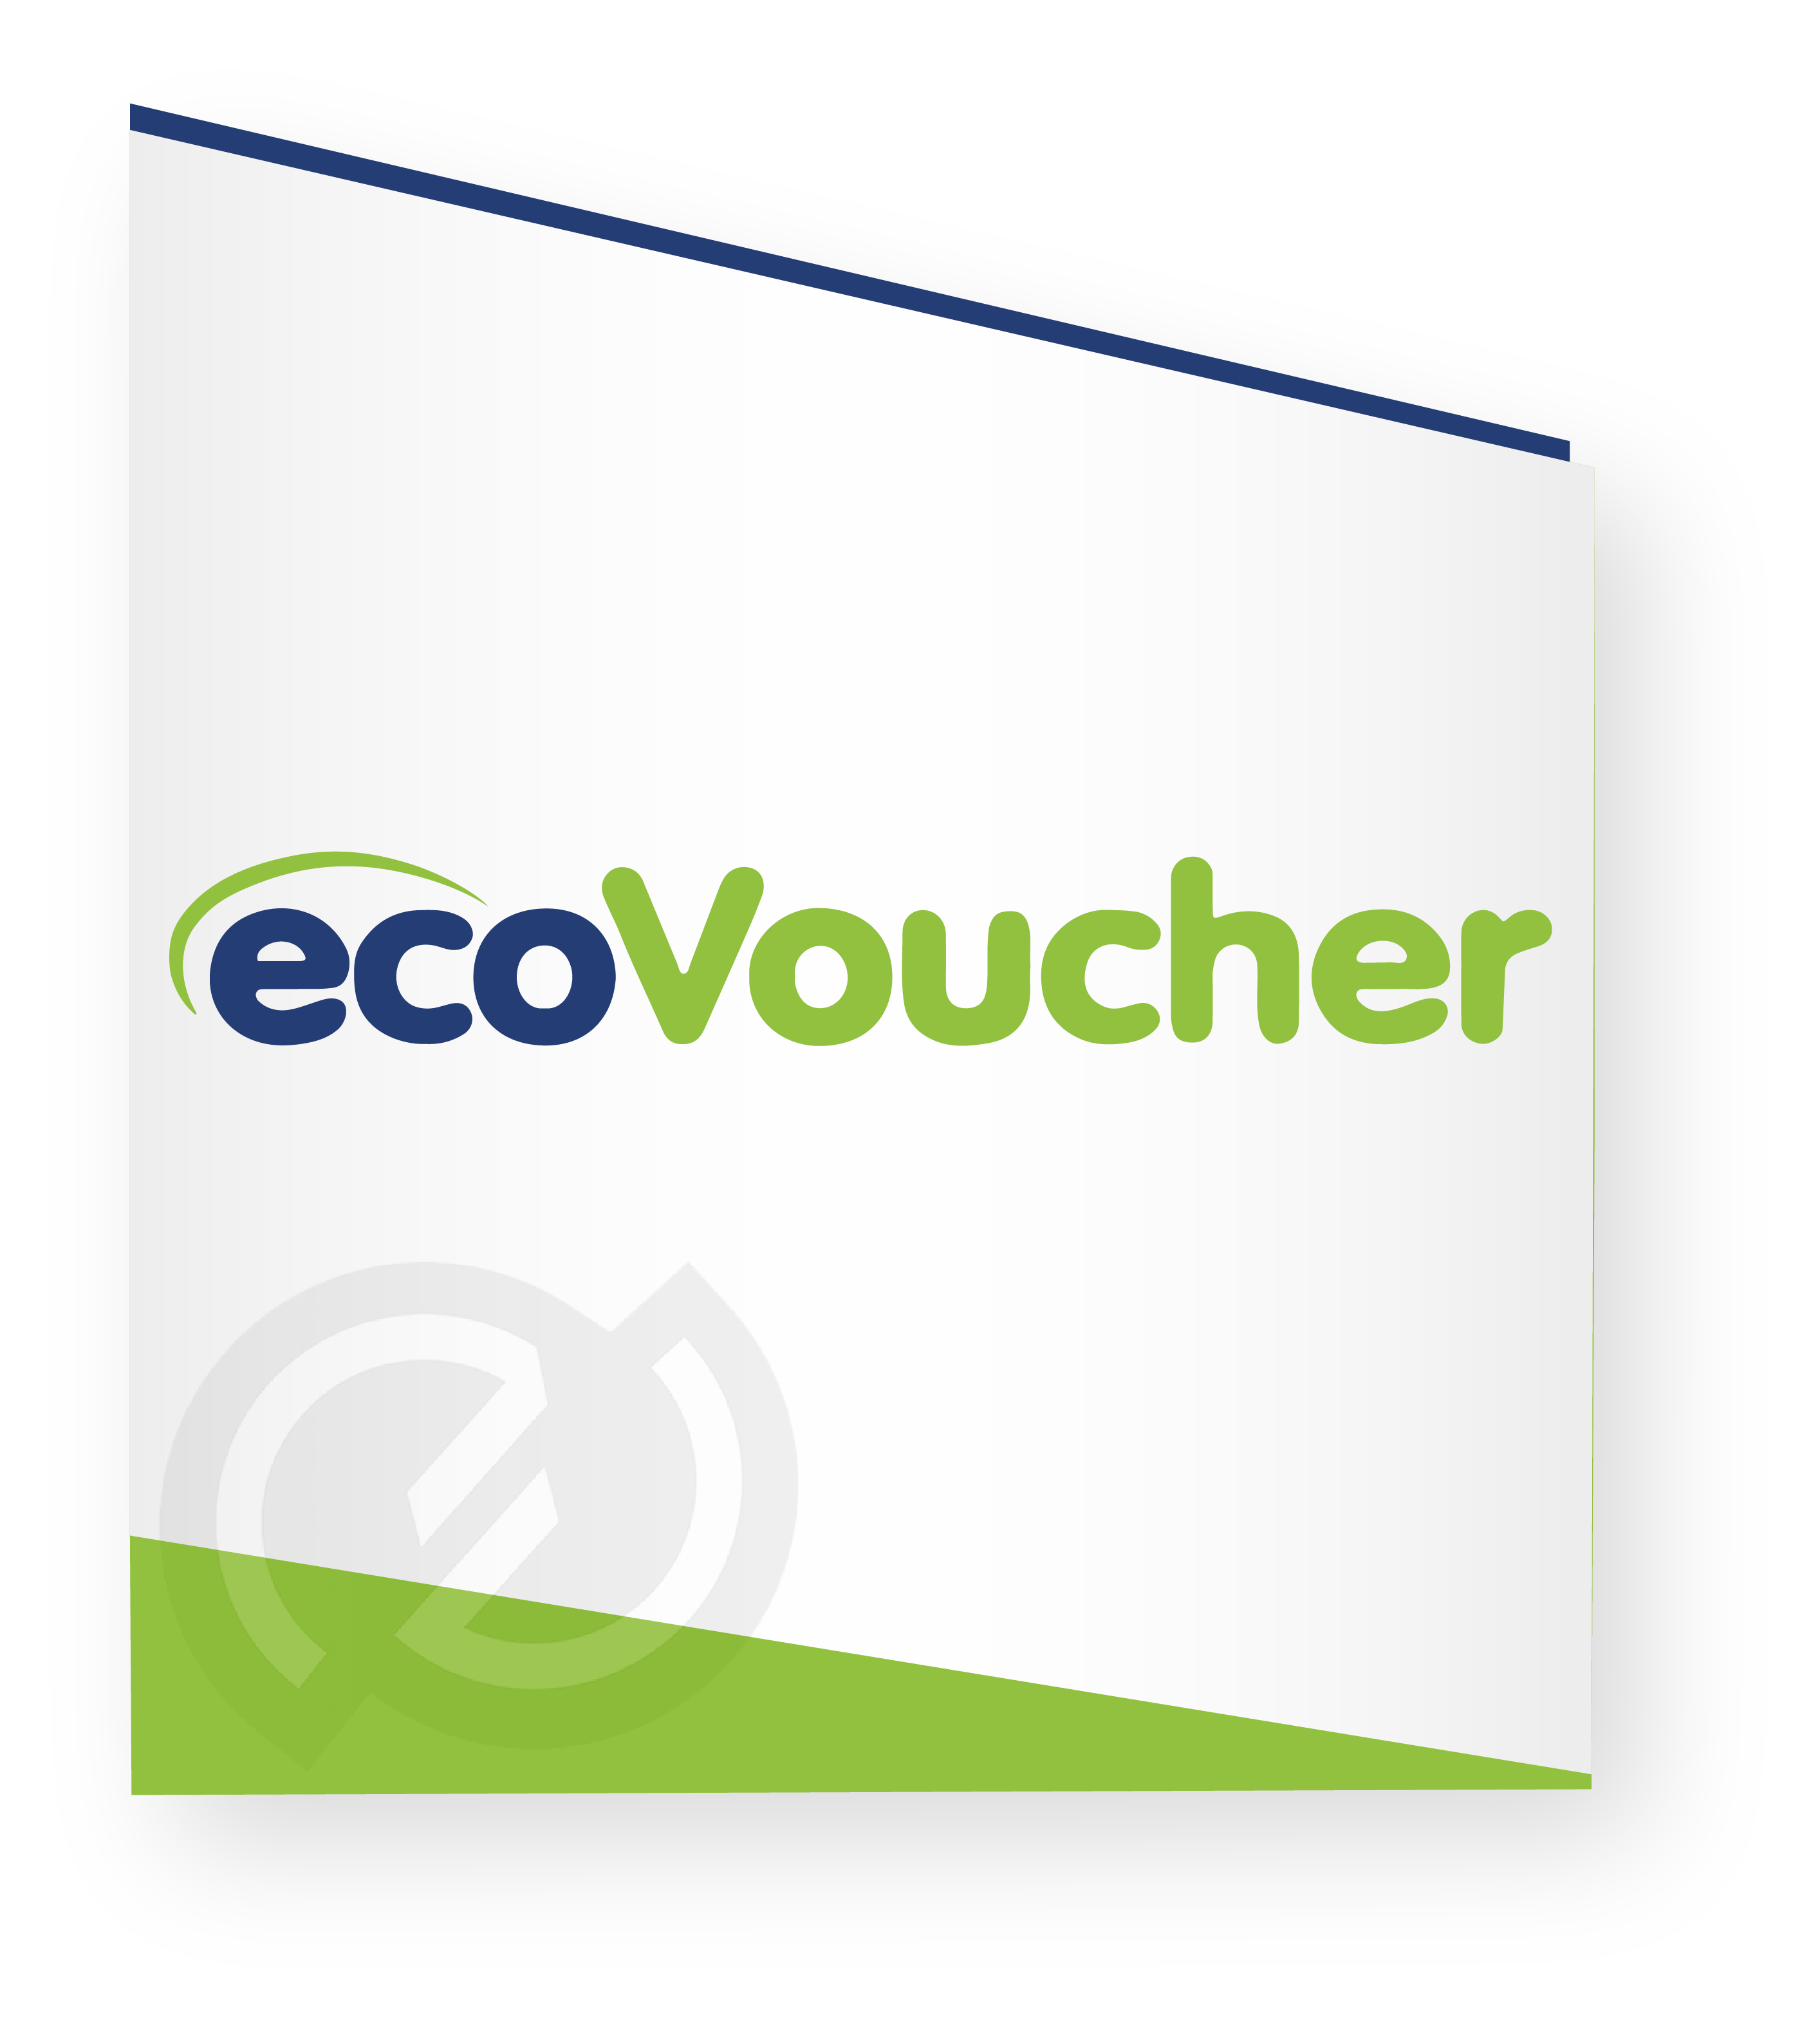 Image logo ecoVoucher